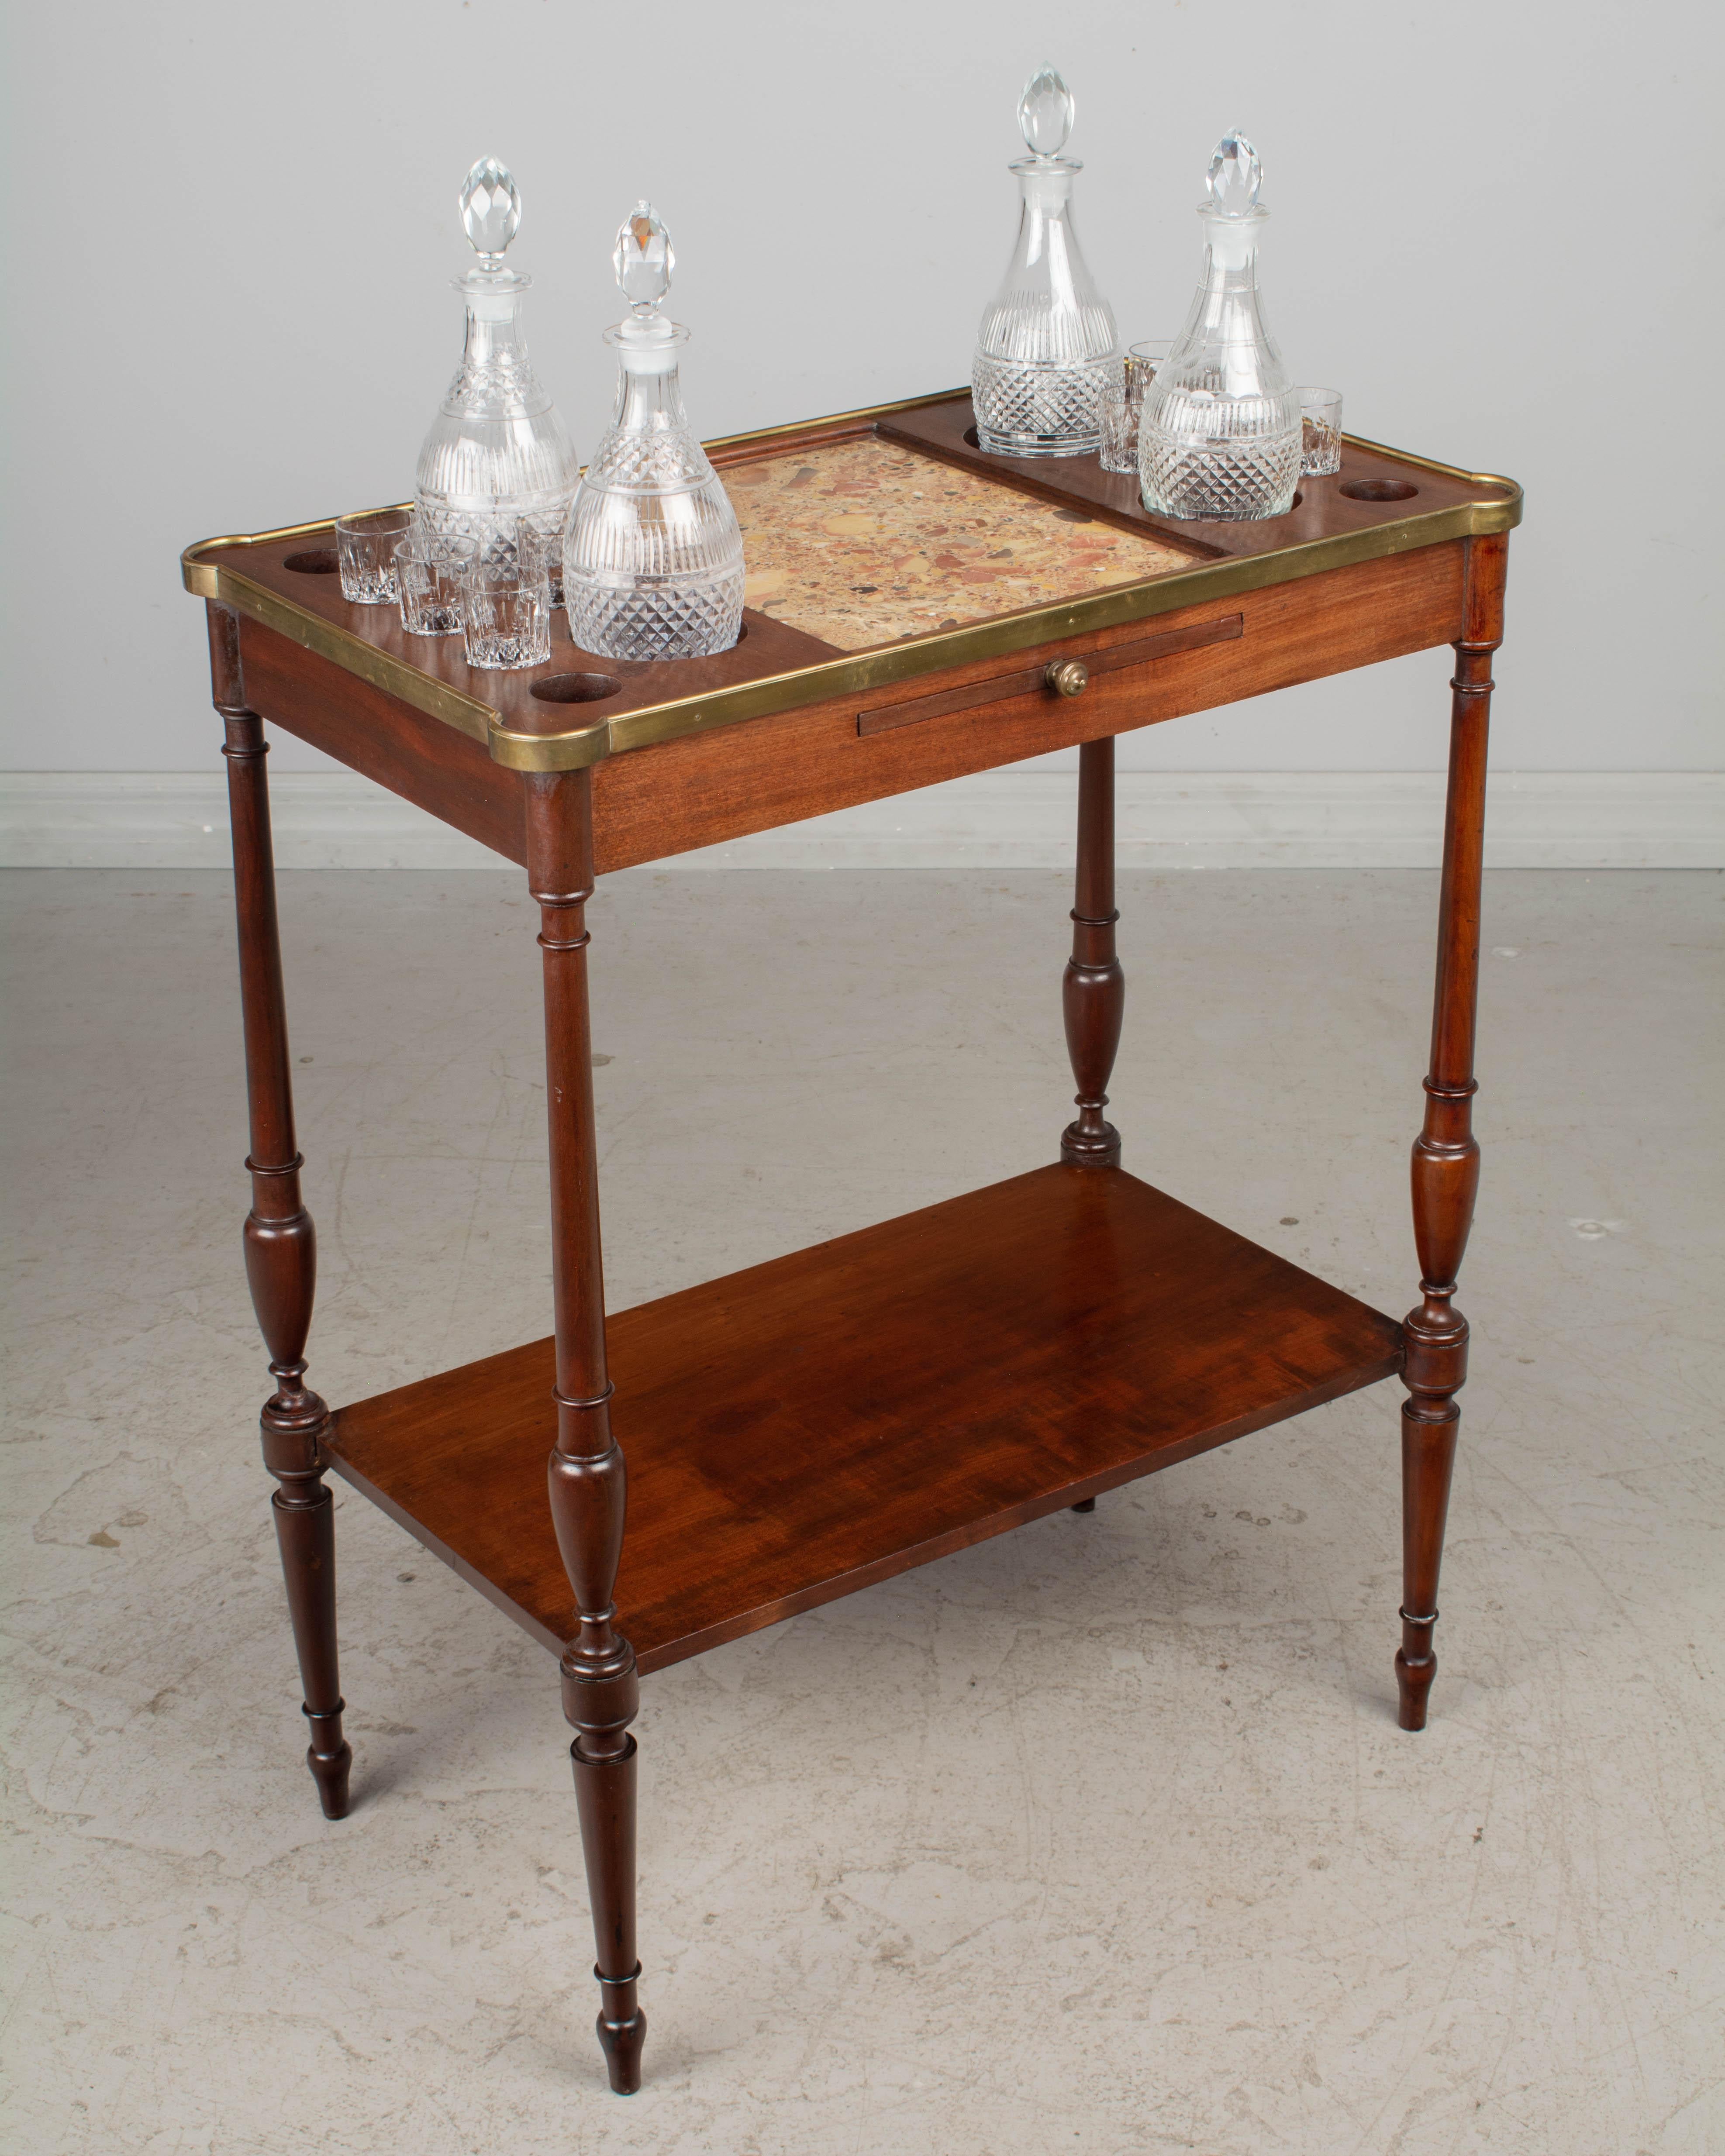 Table d'appoint pour boissons alcoolisées de style Louis XVI, ou petit bar, en acajou massif avec étagère inférieure, pieds fuselés tournés et un plateau pour servir. Le plateau est doté d'un encadrement en laiton, d'un insert en marbre Brèche